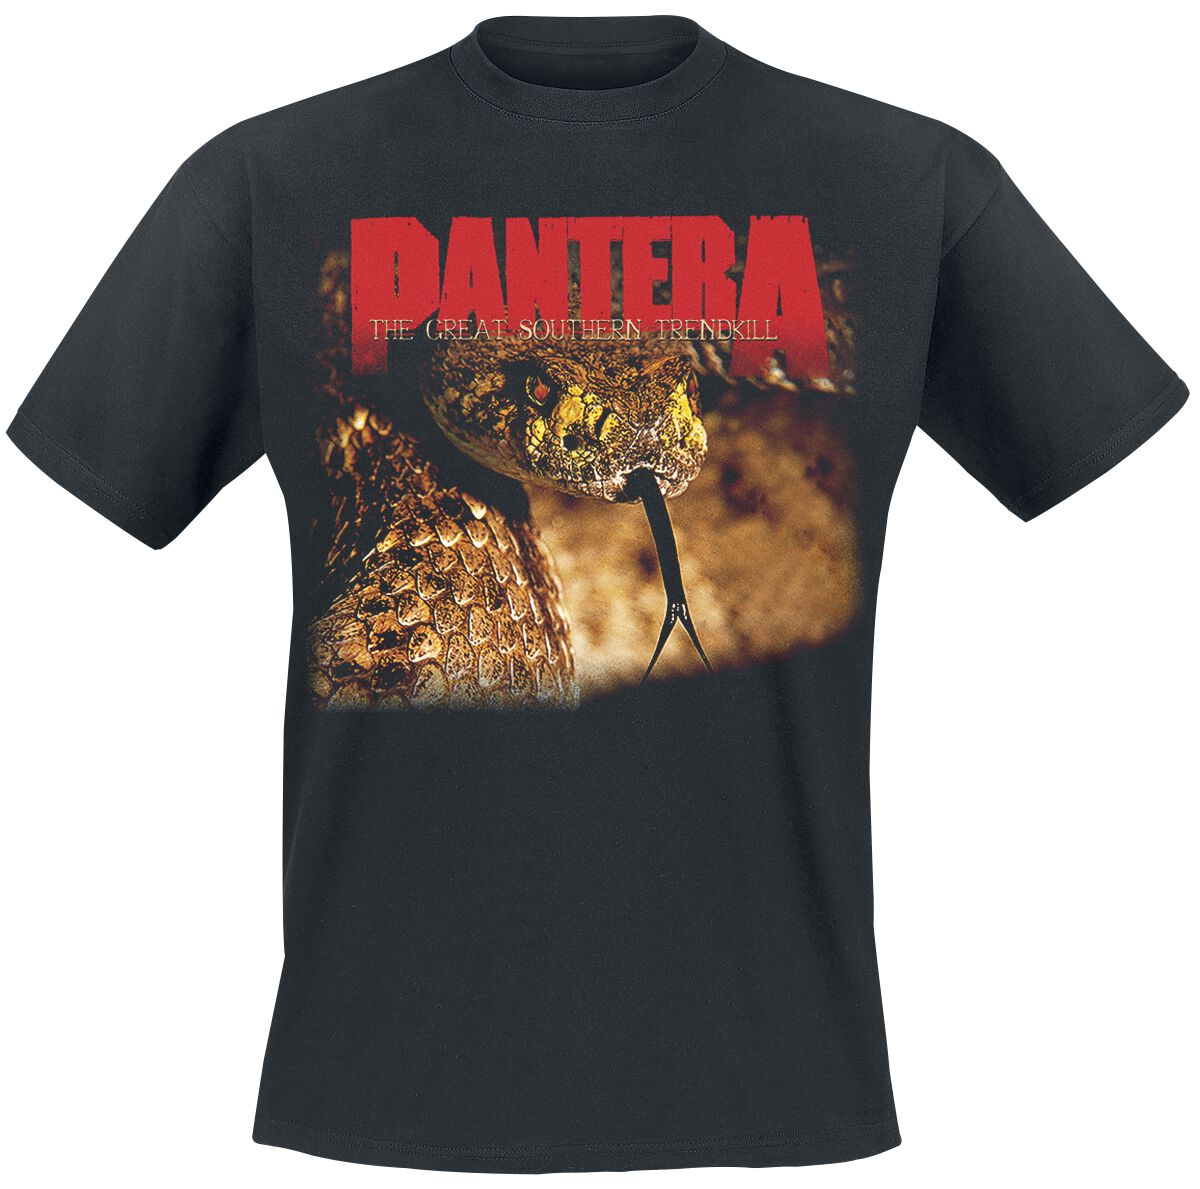 Pantera T-Shirt - The Great Southern Trendkill - S bis XXL - für Männer - Größe M - schwarz  - Lizenziertes Merchandise!